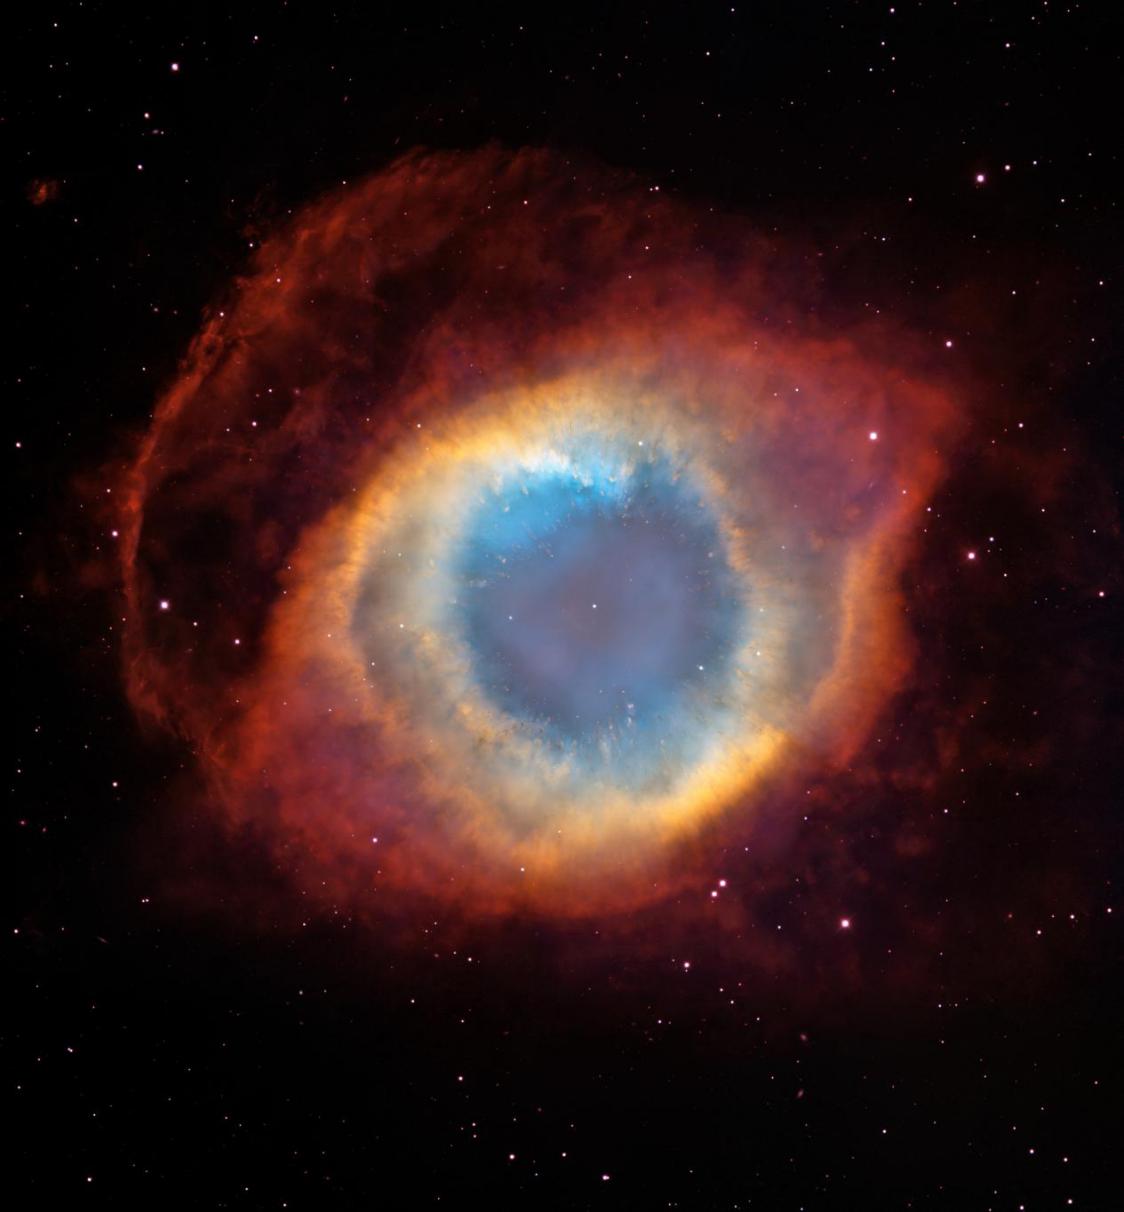 行星状星云NGC 7293就像一只巨眼